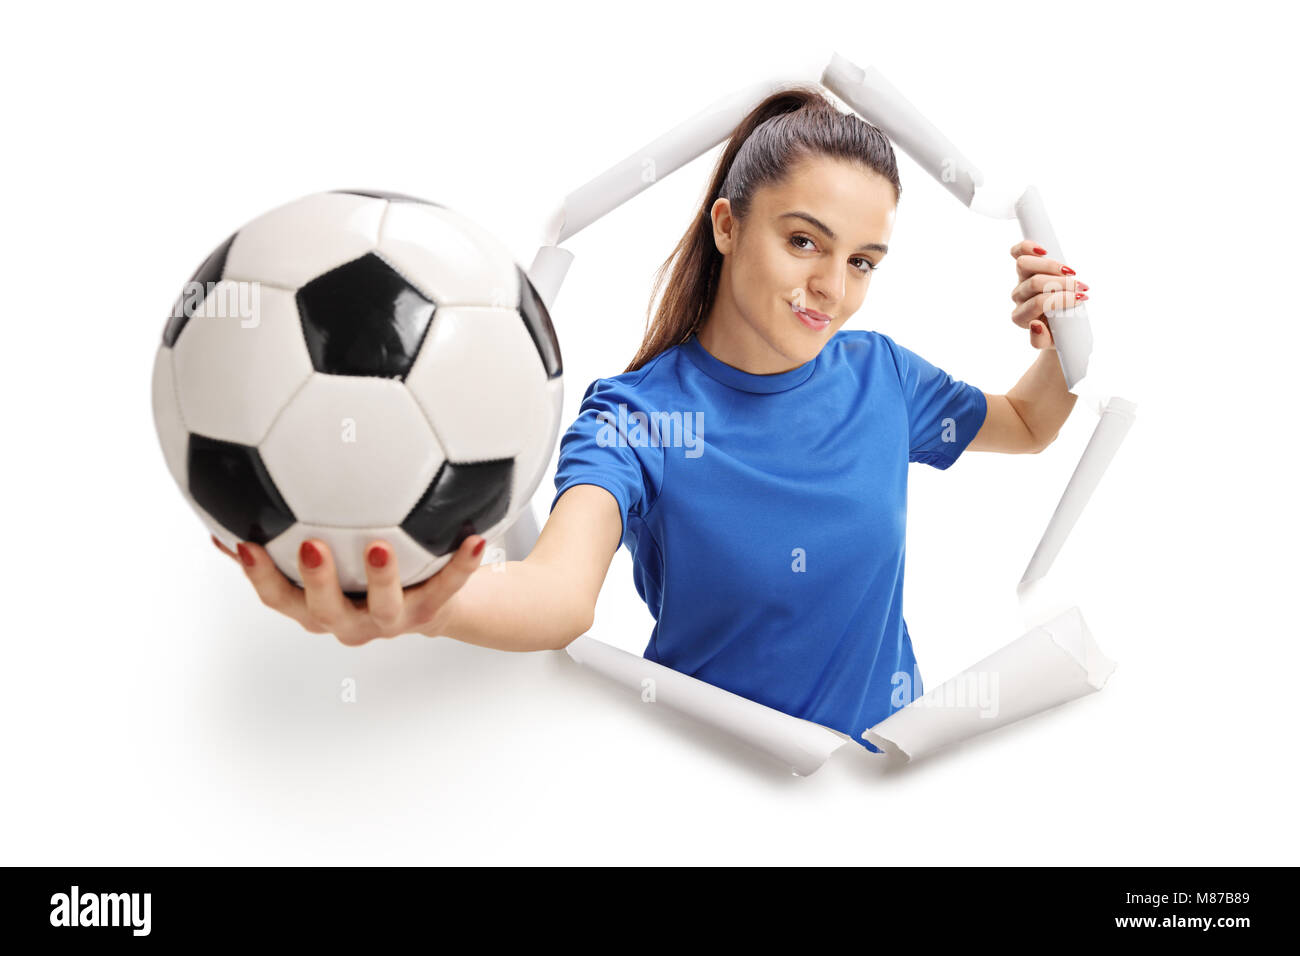 Le joueur de soccer féminin papier cassant et montrant un foot Banque D'Images